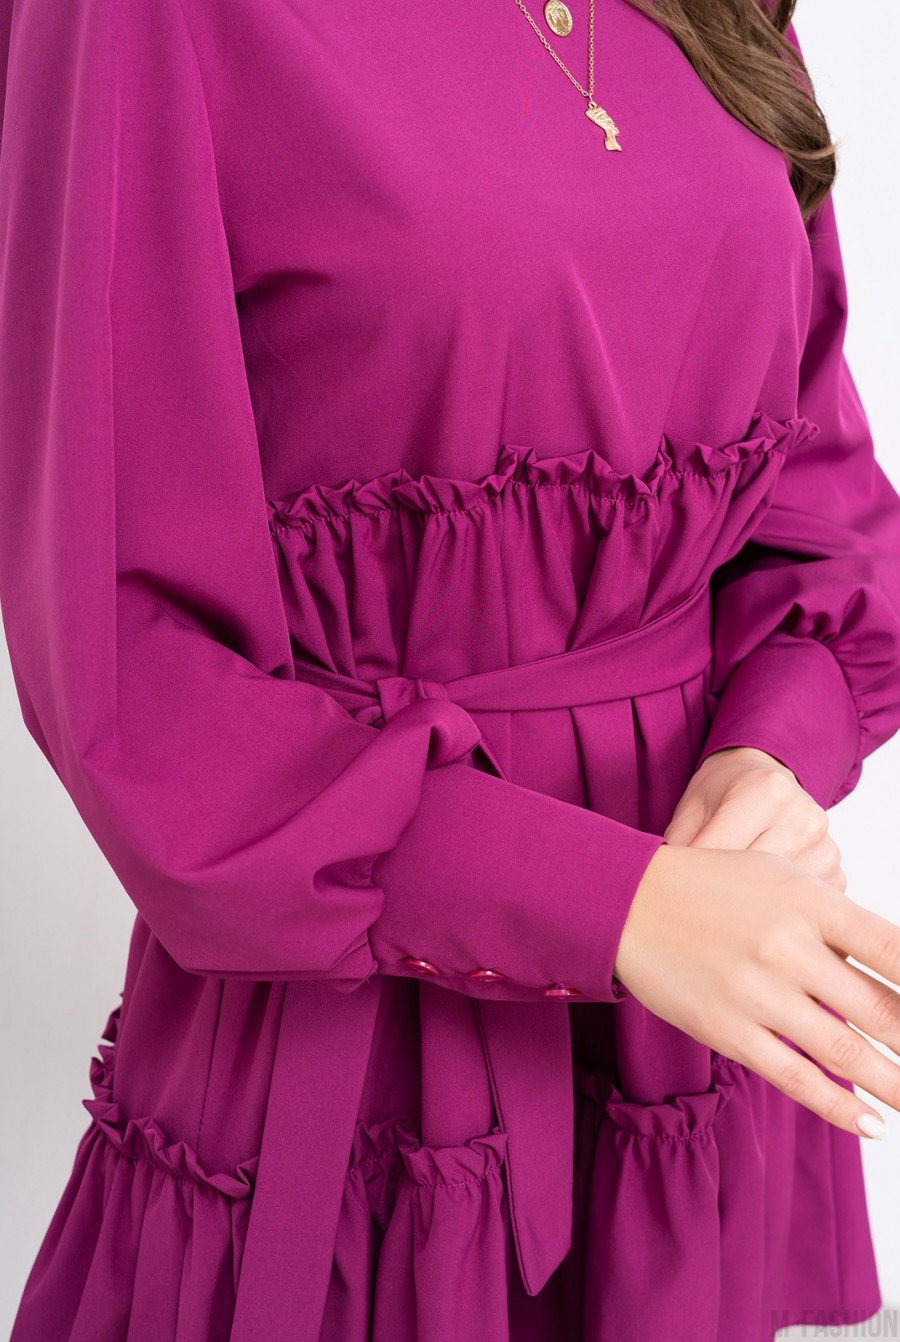 Фиолетовое платье-трапеция с рюшами - Фото 4